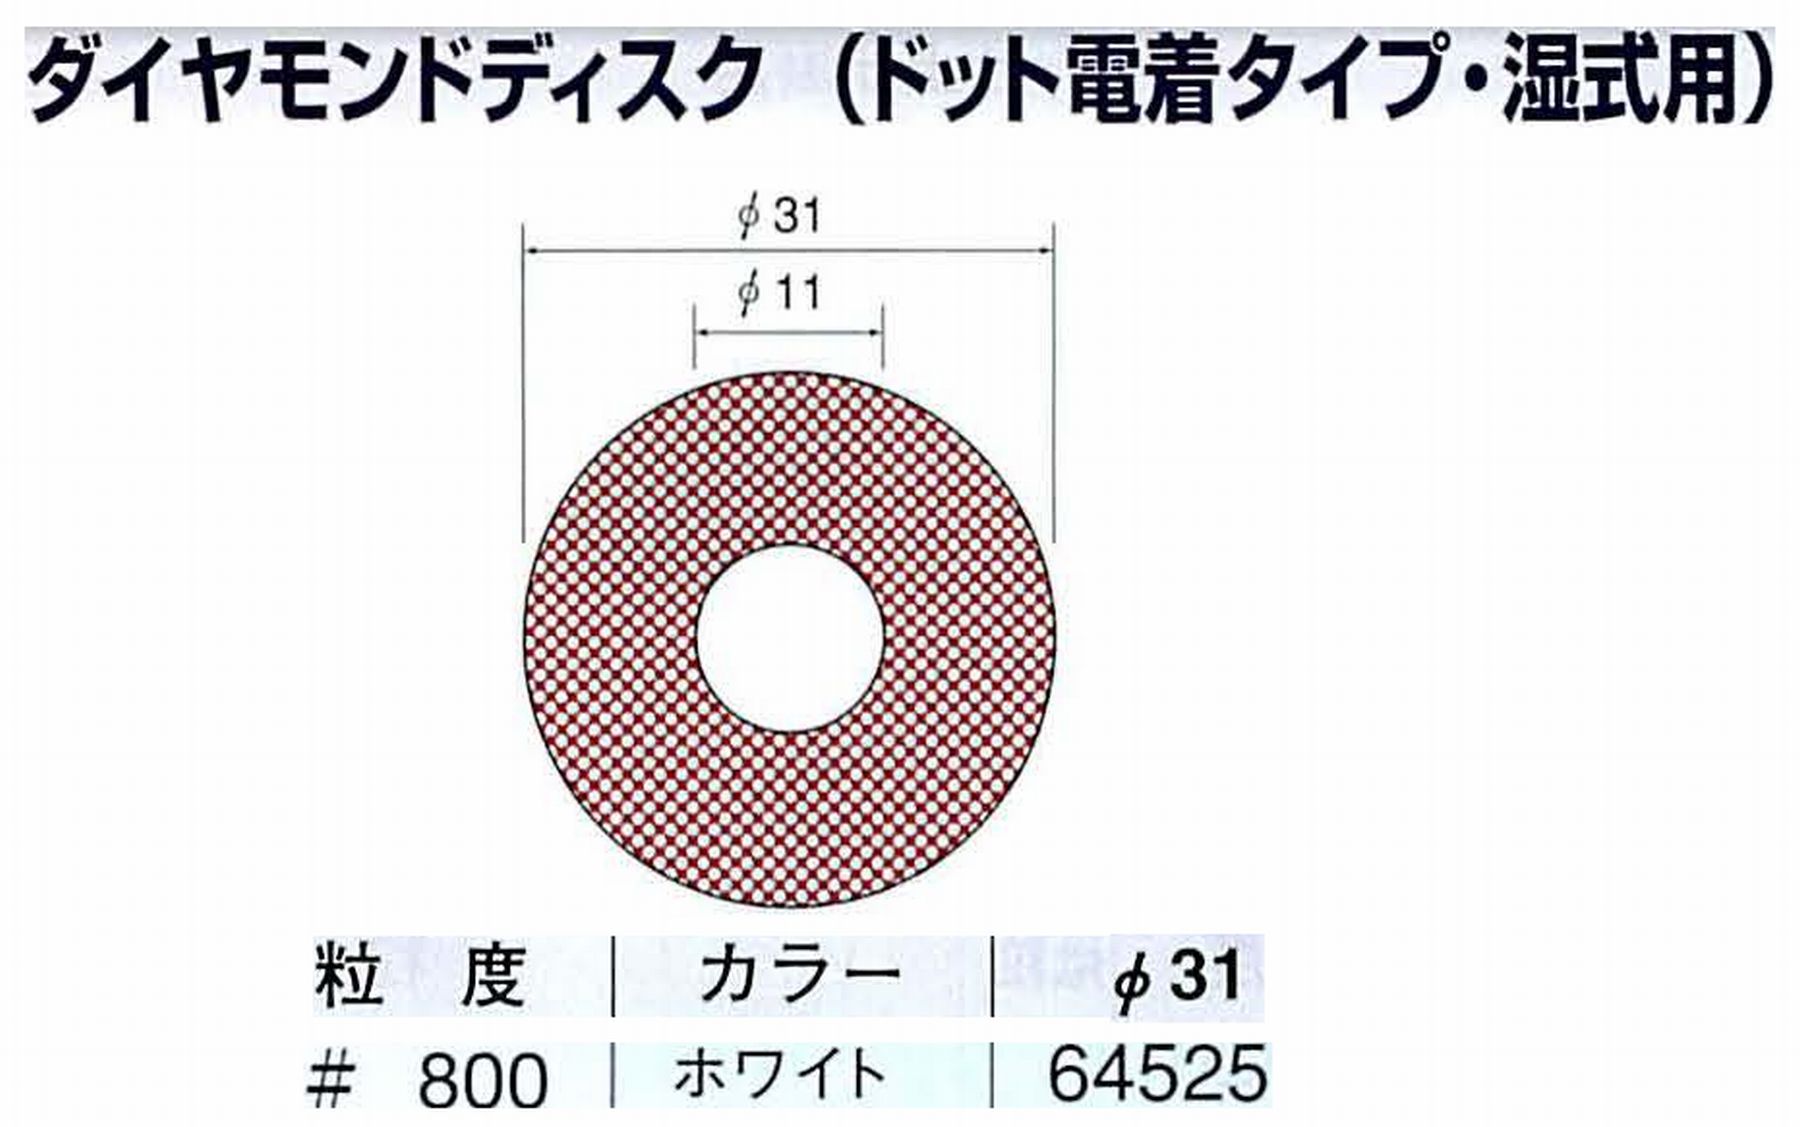 ナカニシ/NAKANISHI アングルグラインダ(電動・エアー) アングルアタッチメント専用工具 ダイヤモンドディスク(ドット電着タイプ・湿式用) 64525